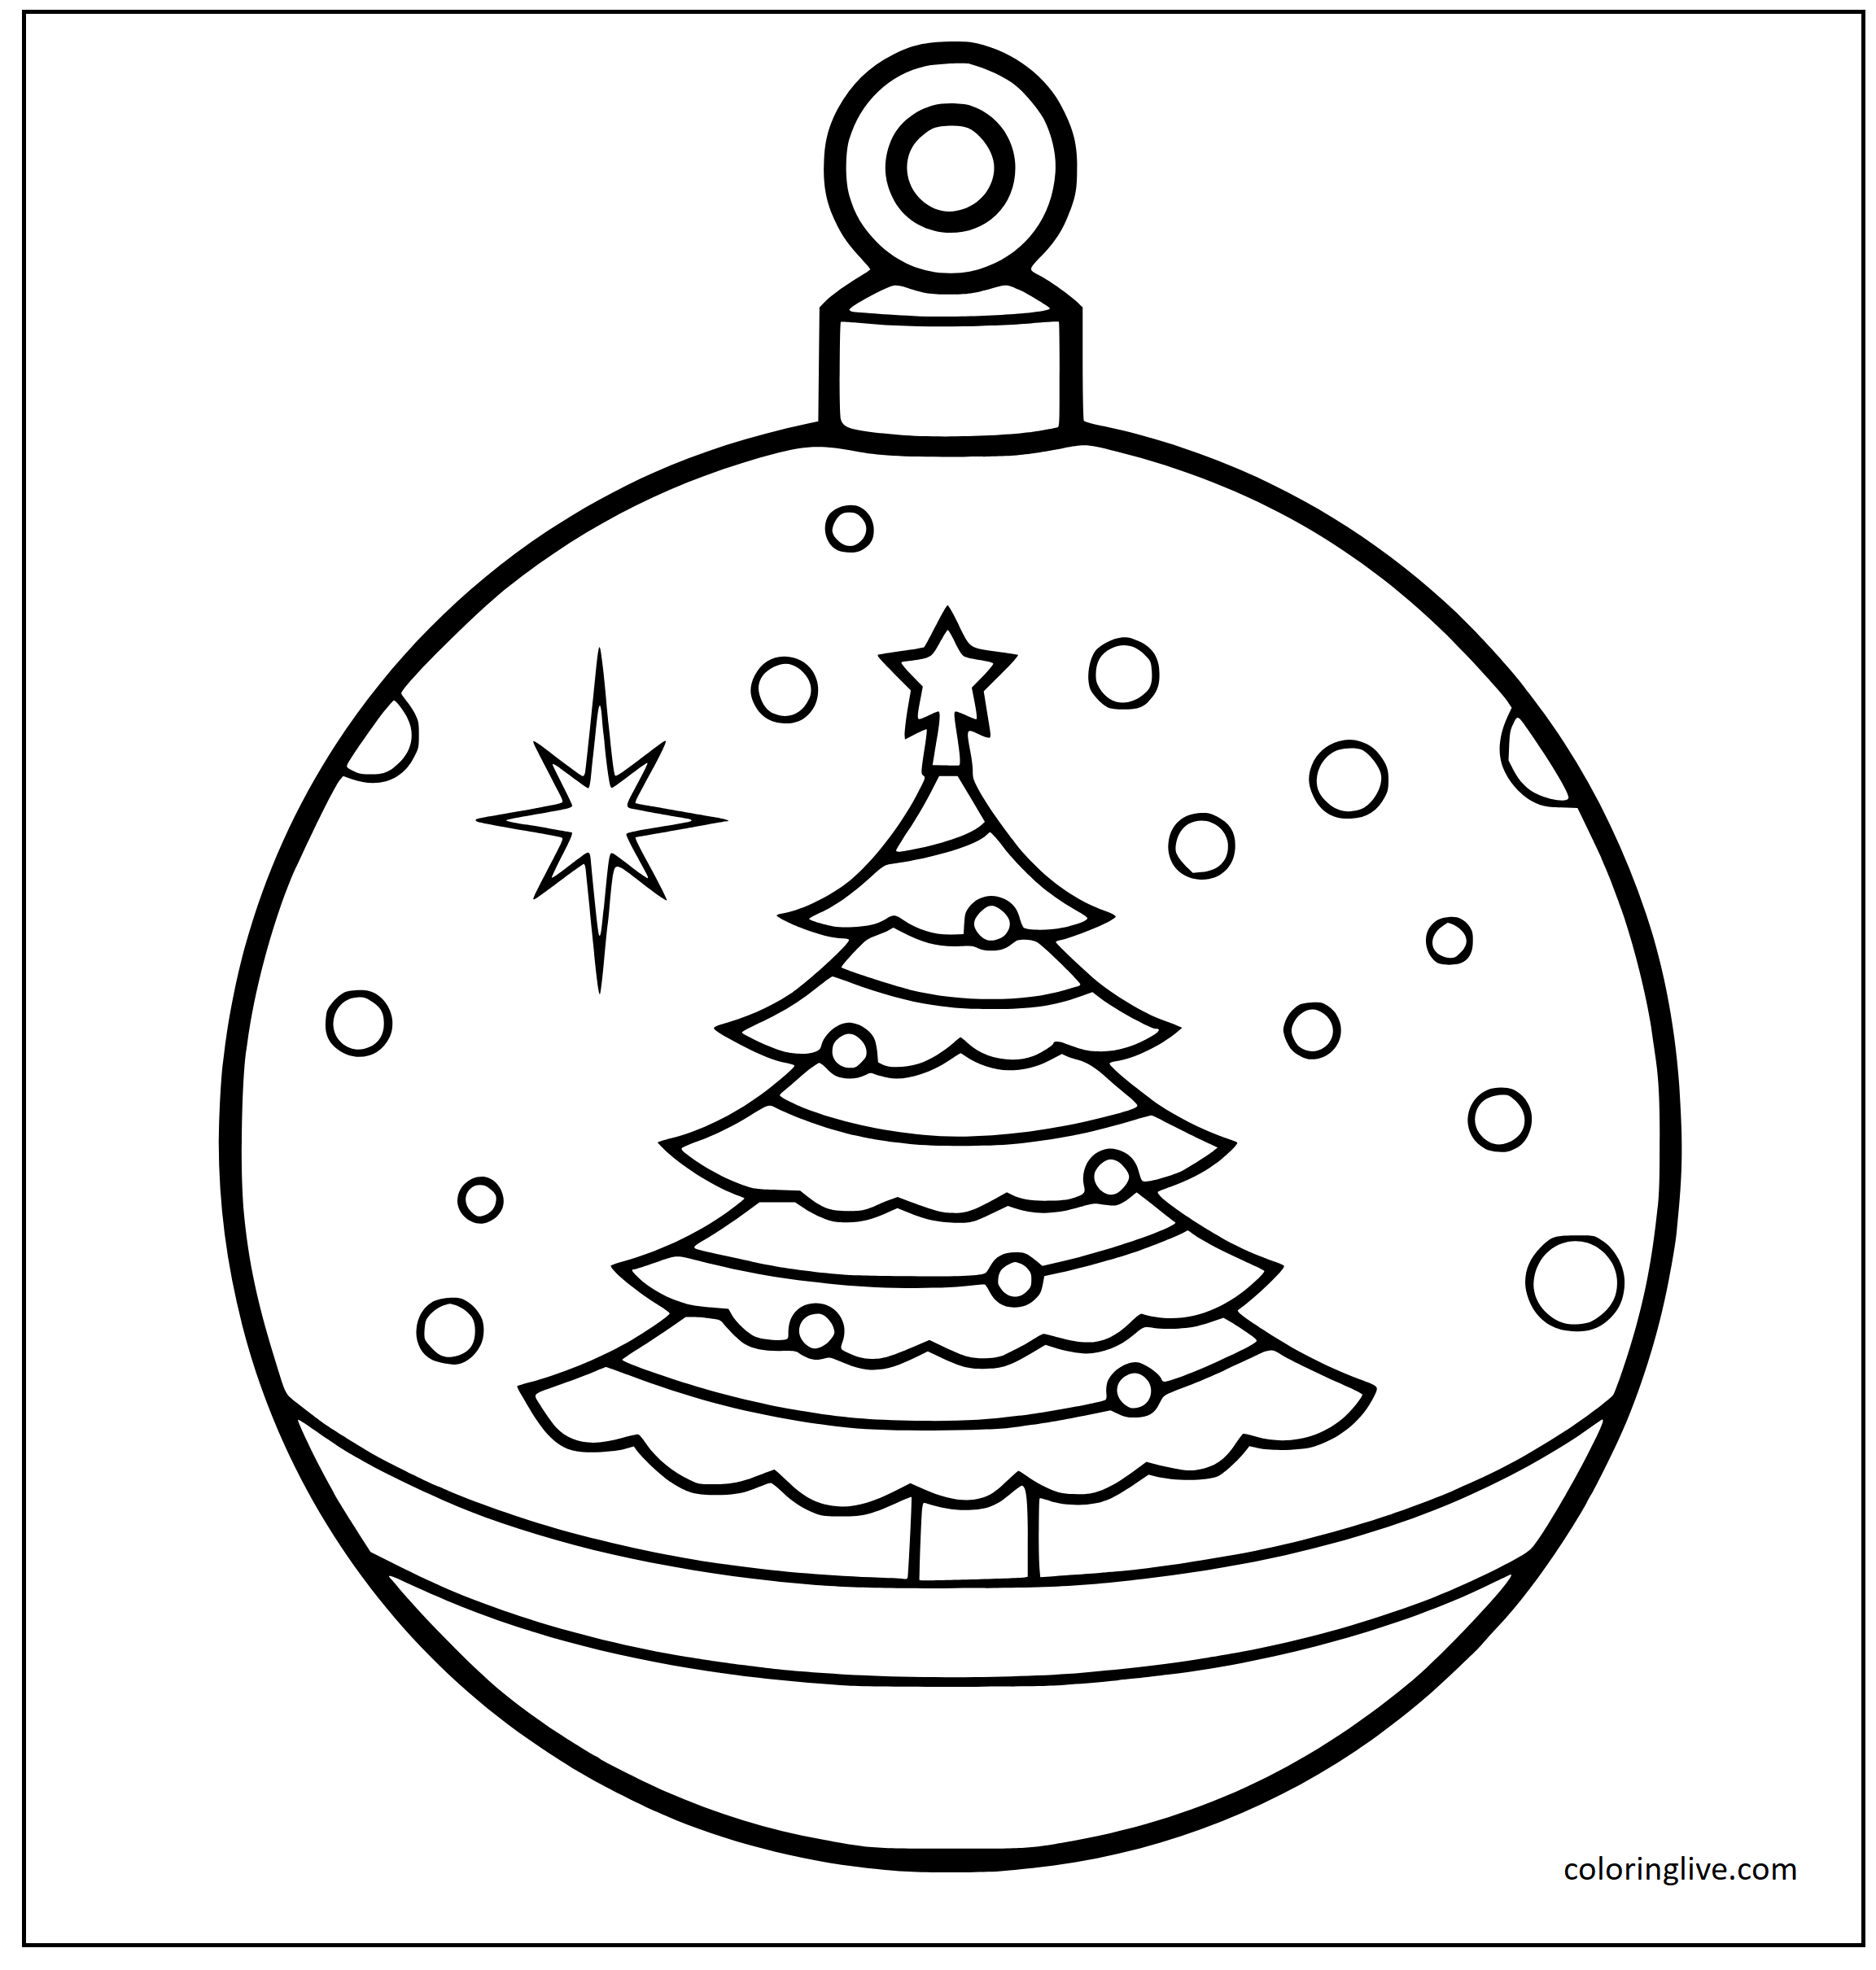 Printable Christmas Ornament and Christmas Tree Coloring Page for kids.